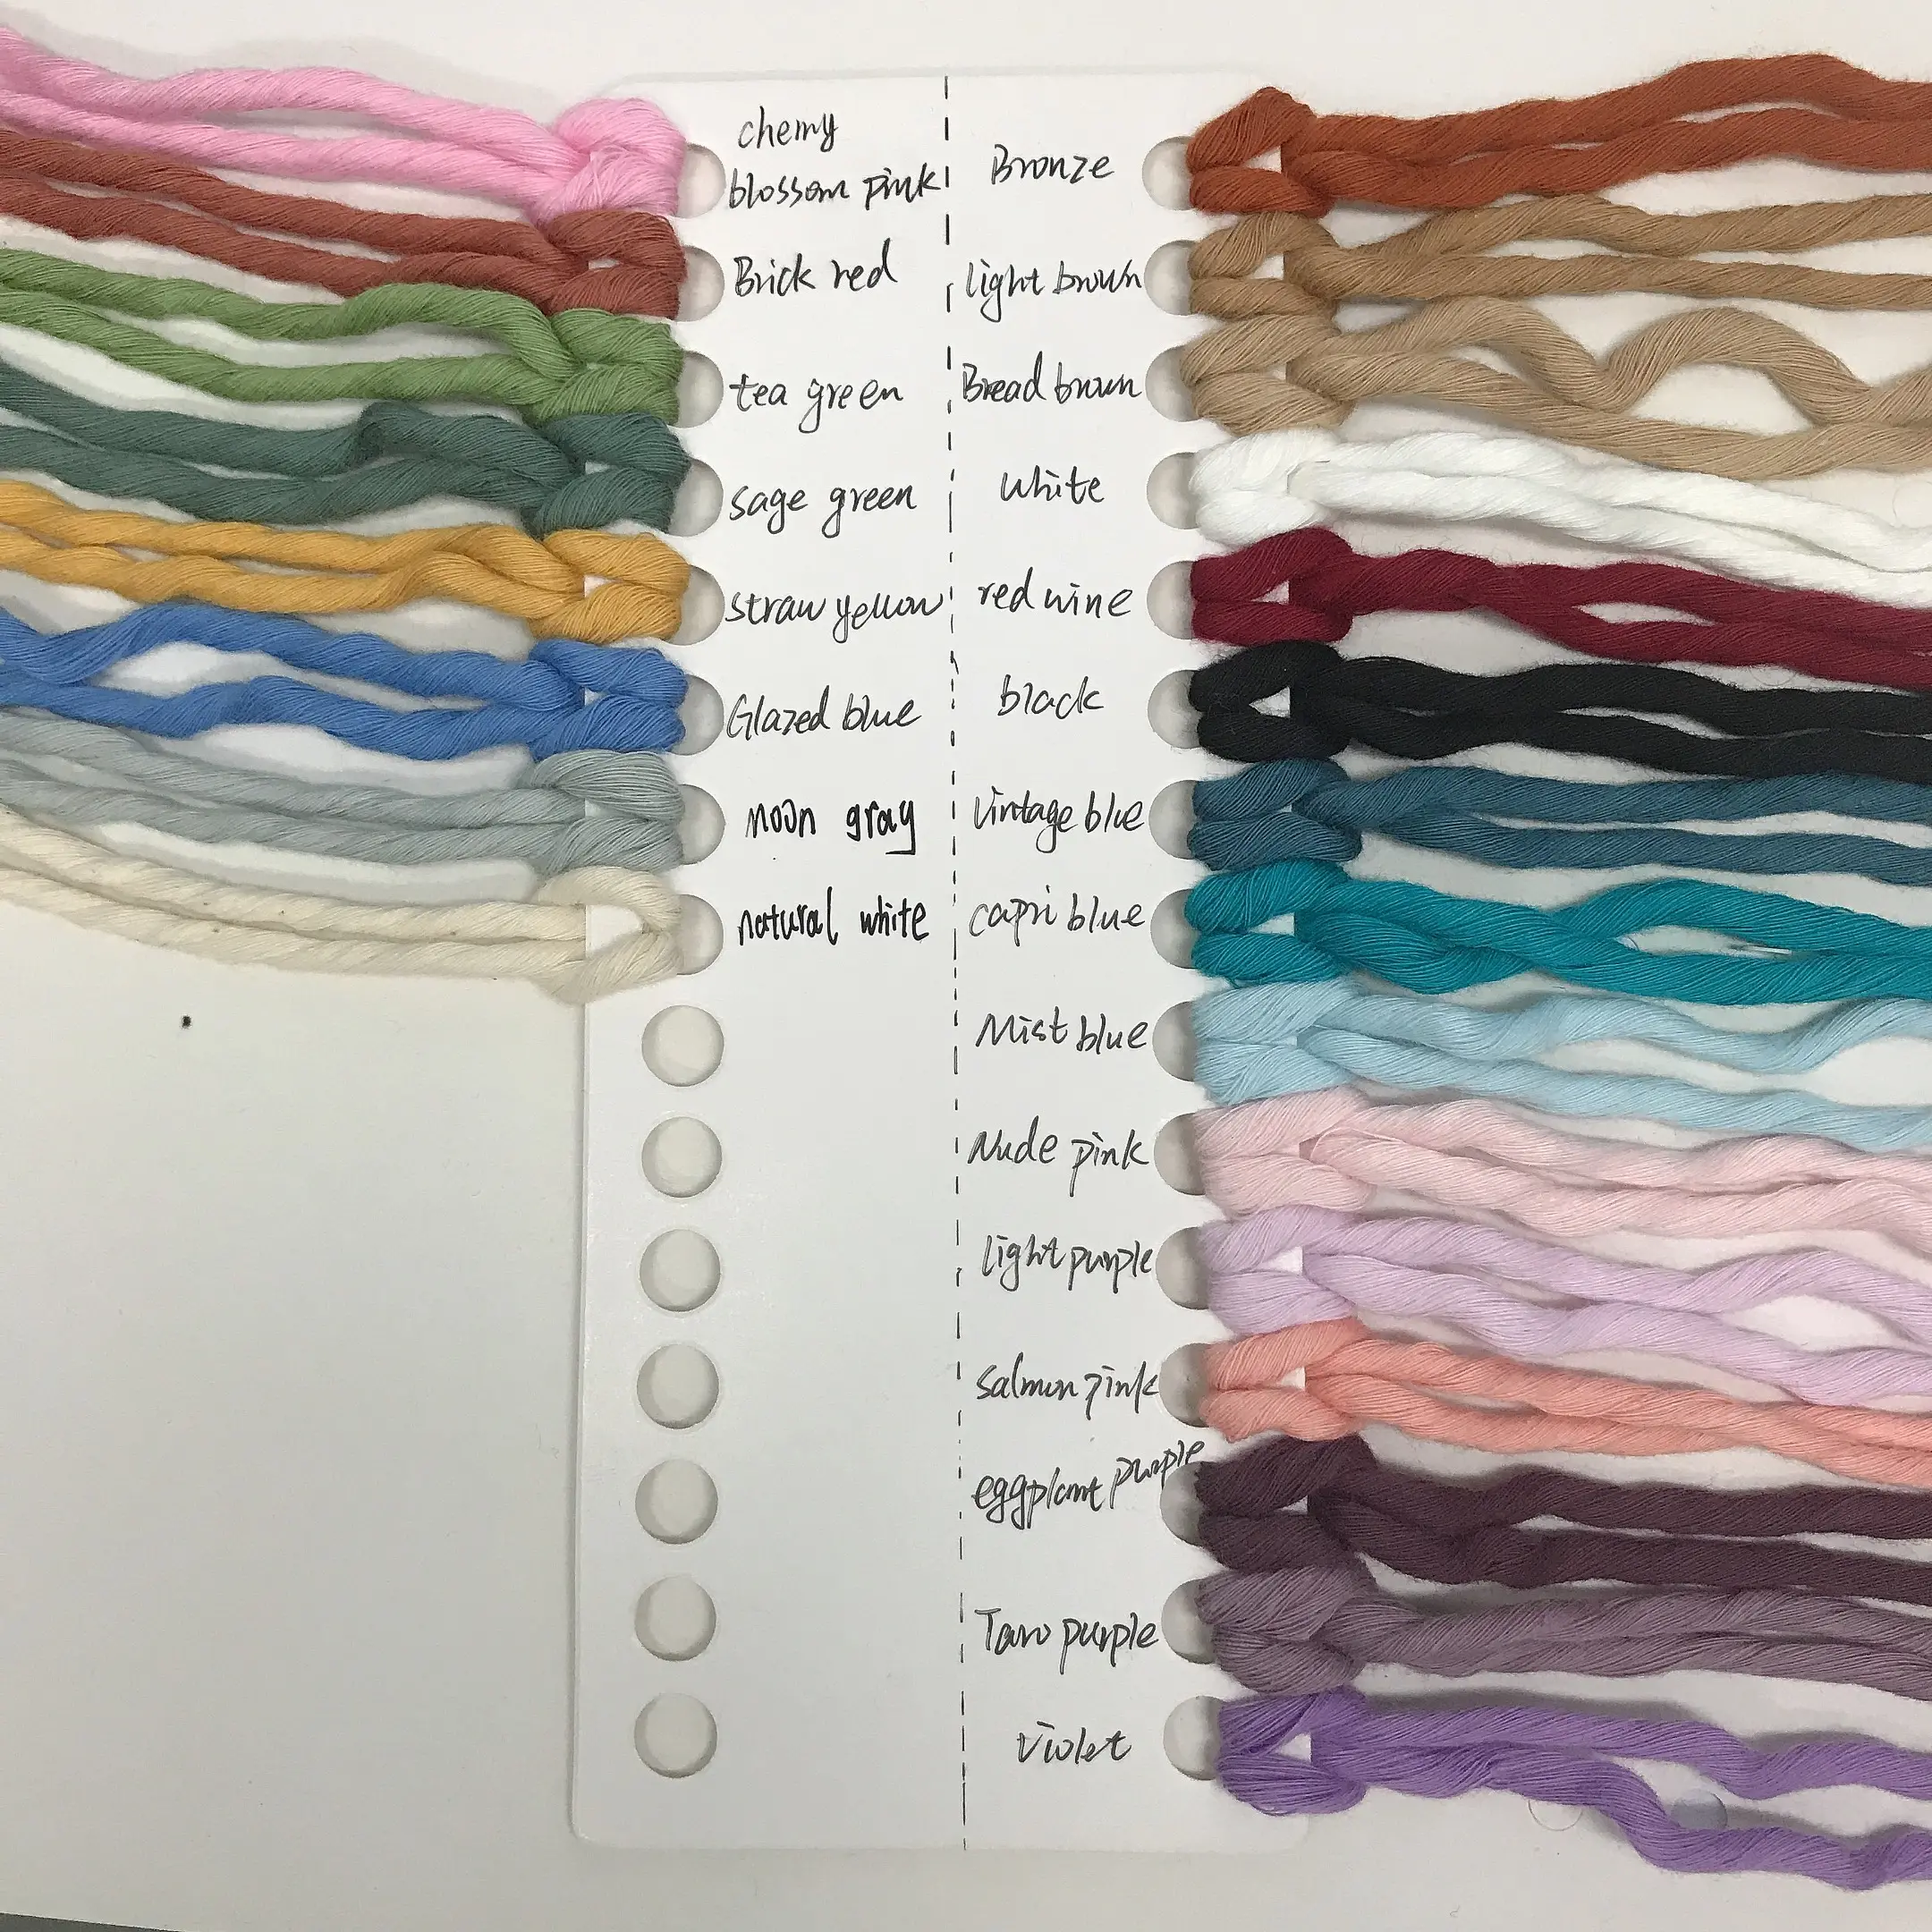 Commercio all'ingrosso di qualità superiore 3mm 4mm 5mm colorato singolo filo ritorto corda macrame corde di cotone 4mm